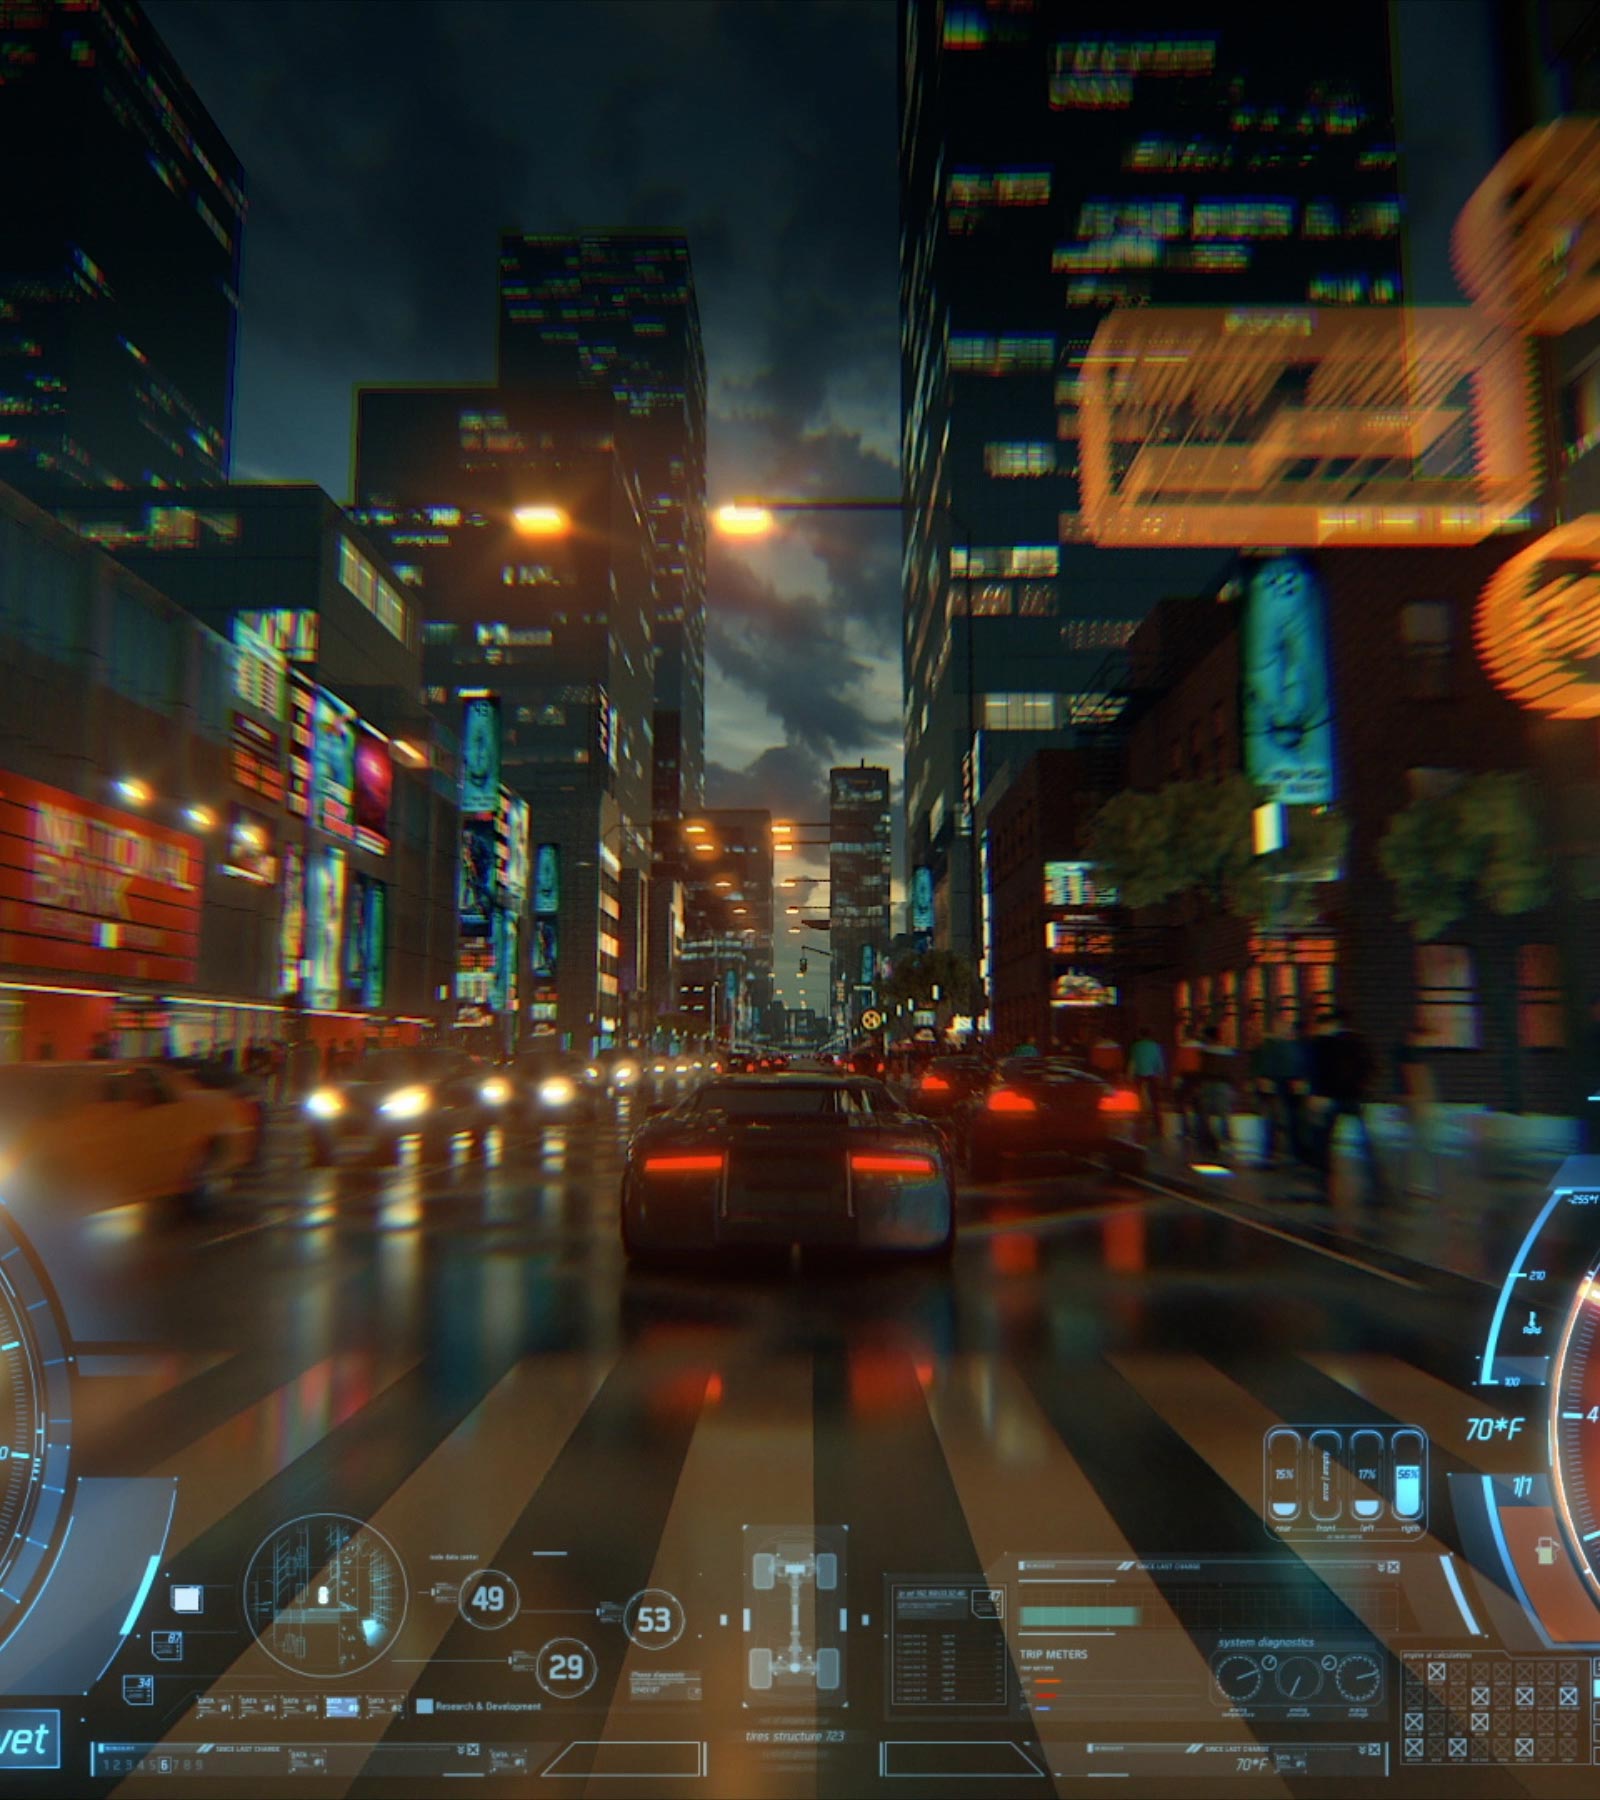 فيديو يتتبع سيارة من الخلف في لعبة فيديو أثناء قيادتها في أحد شوارع المدينة ذات الإضاءة الزاهية عند الغسق. 